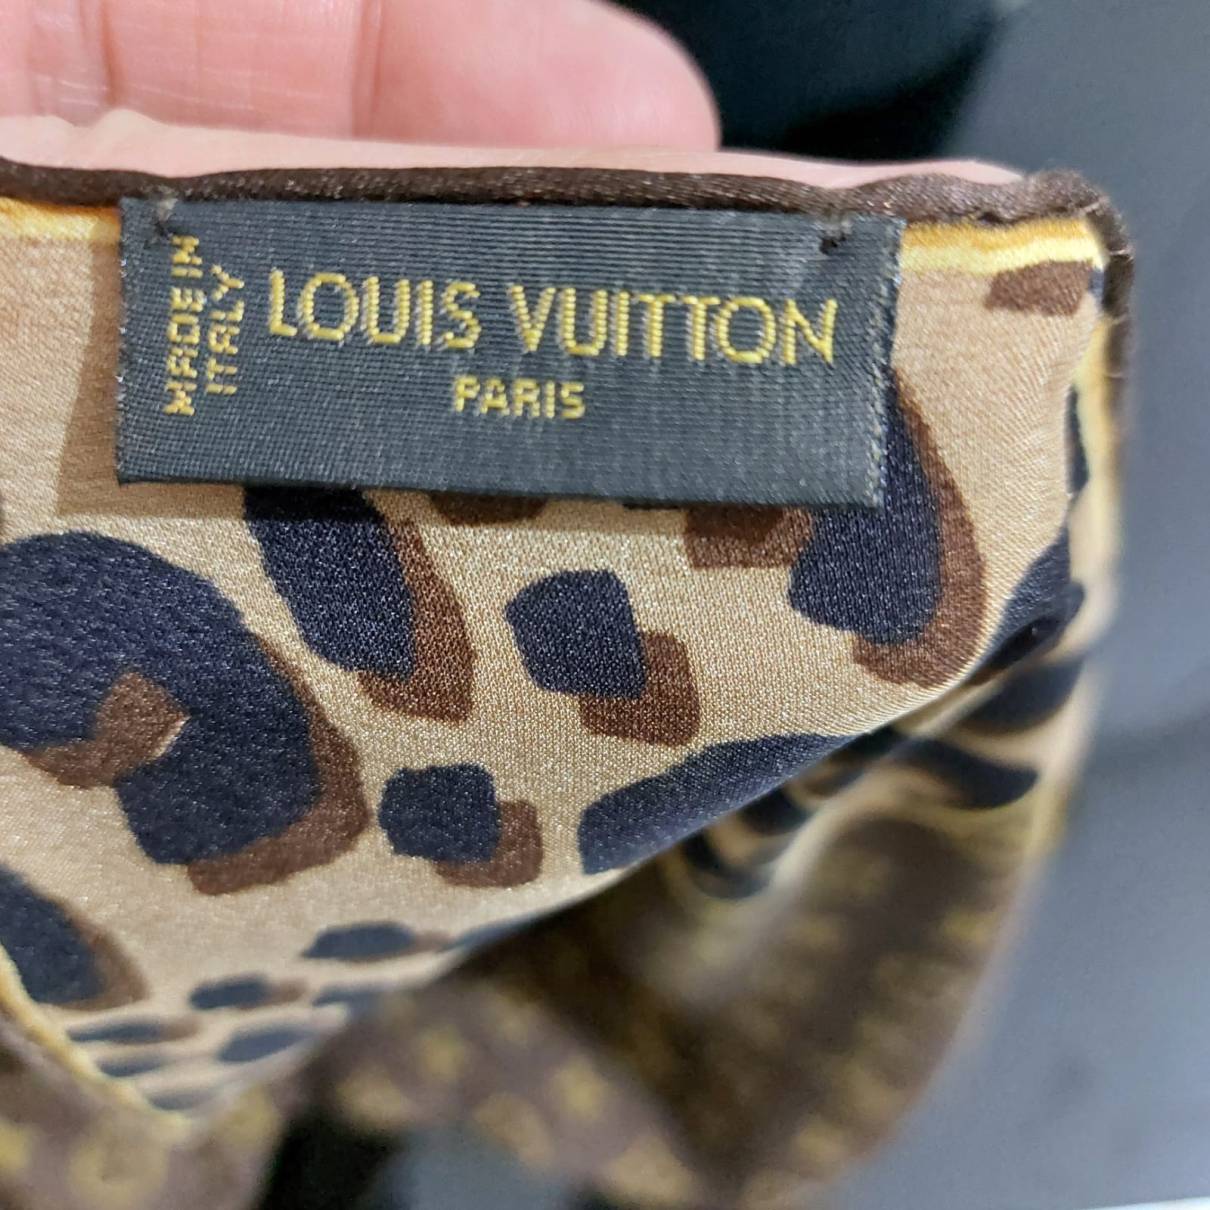 Silk neckerchief Louis Vuitton